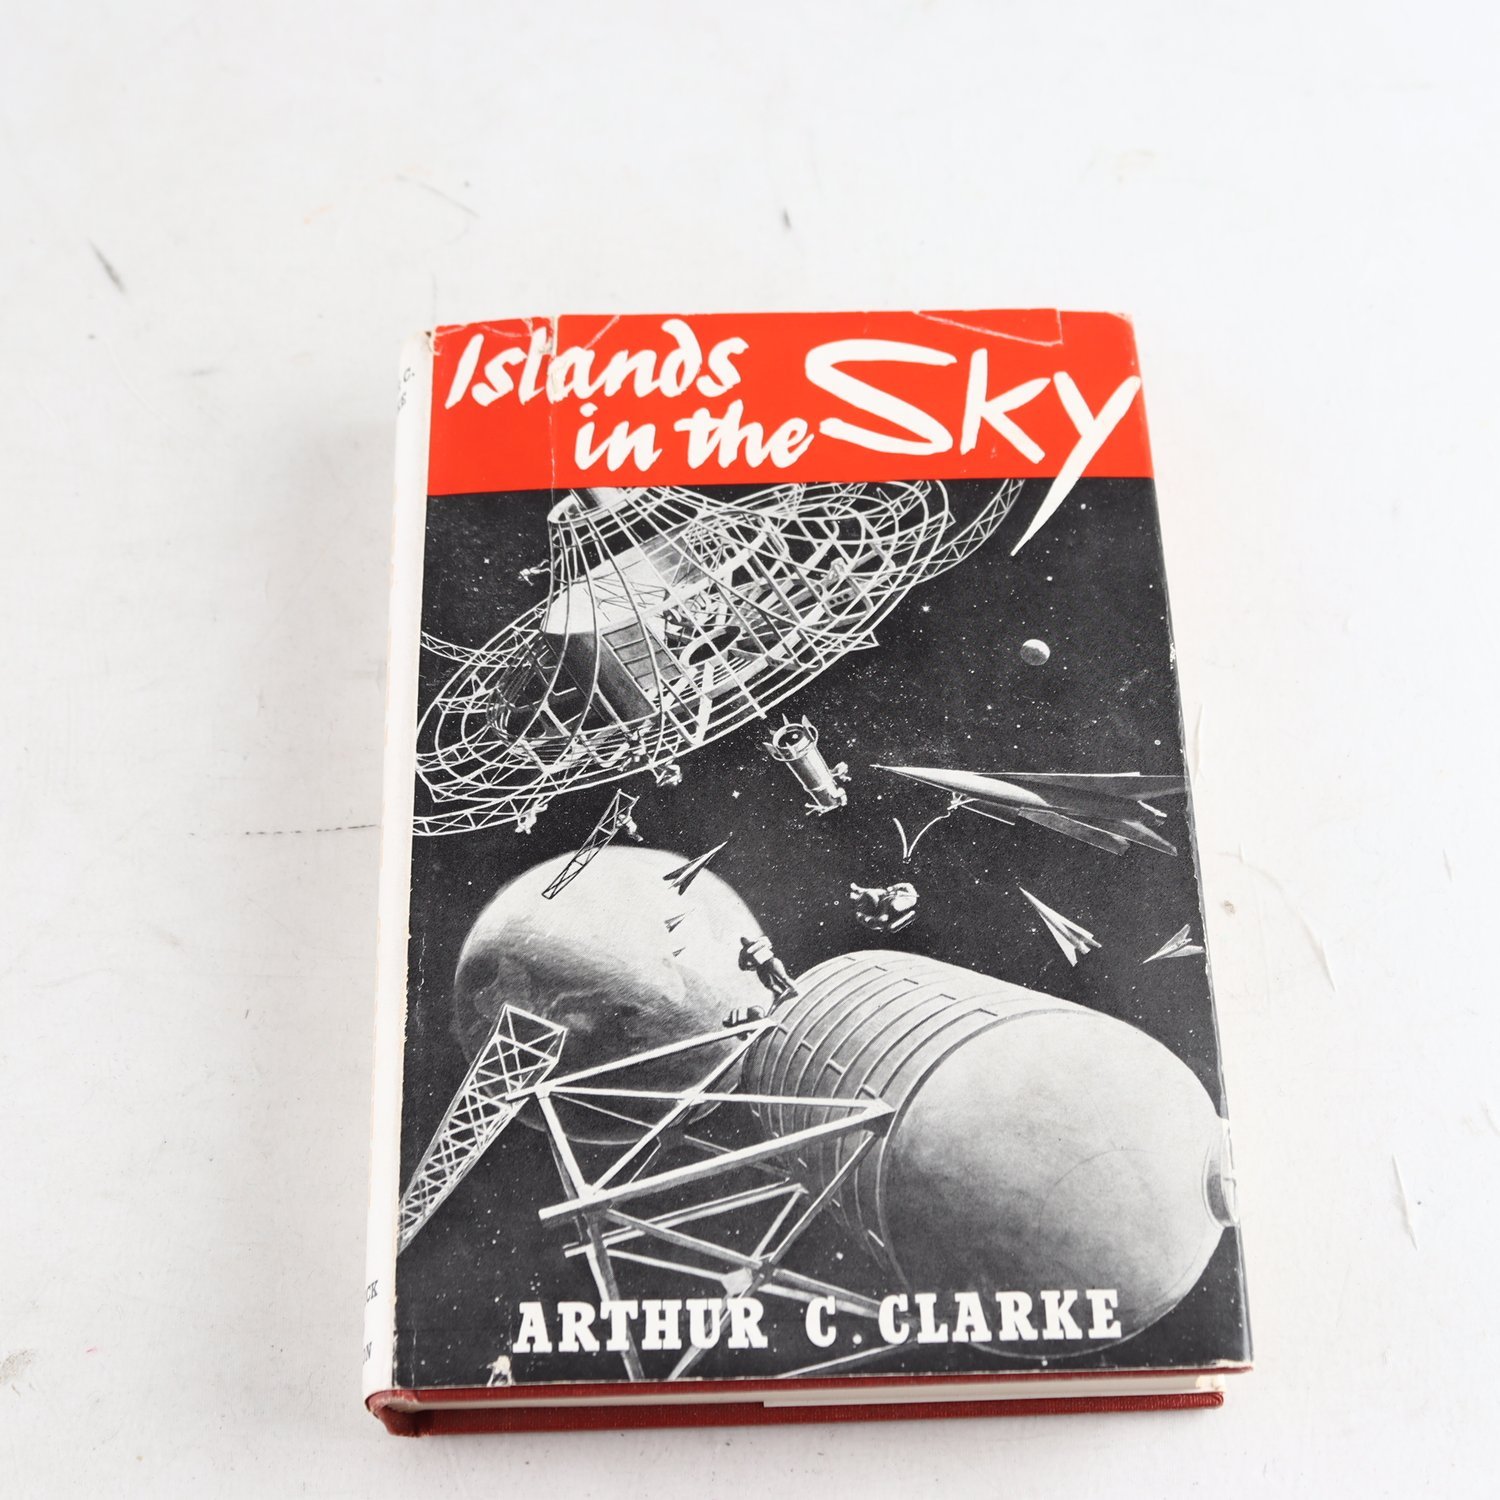 Arthur C. Clarke, Islands in the Sky (Första engelska utgåvan, 1952)